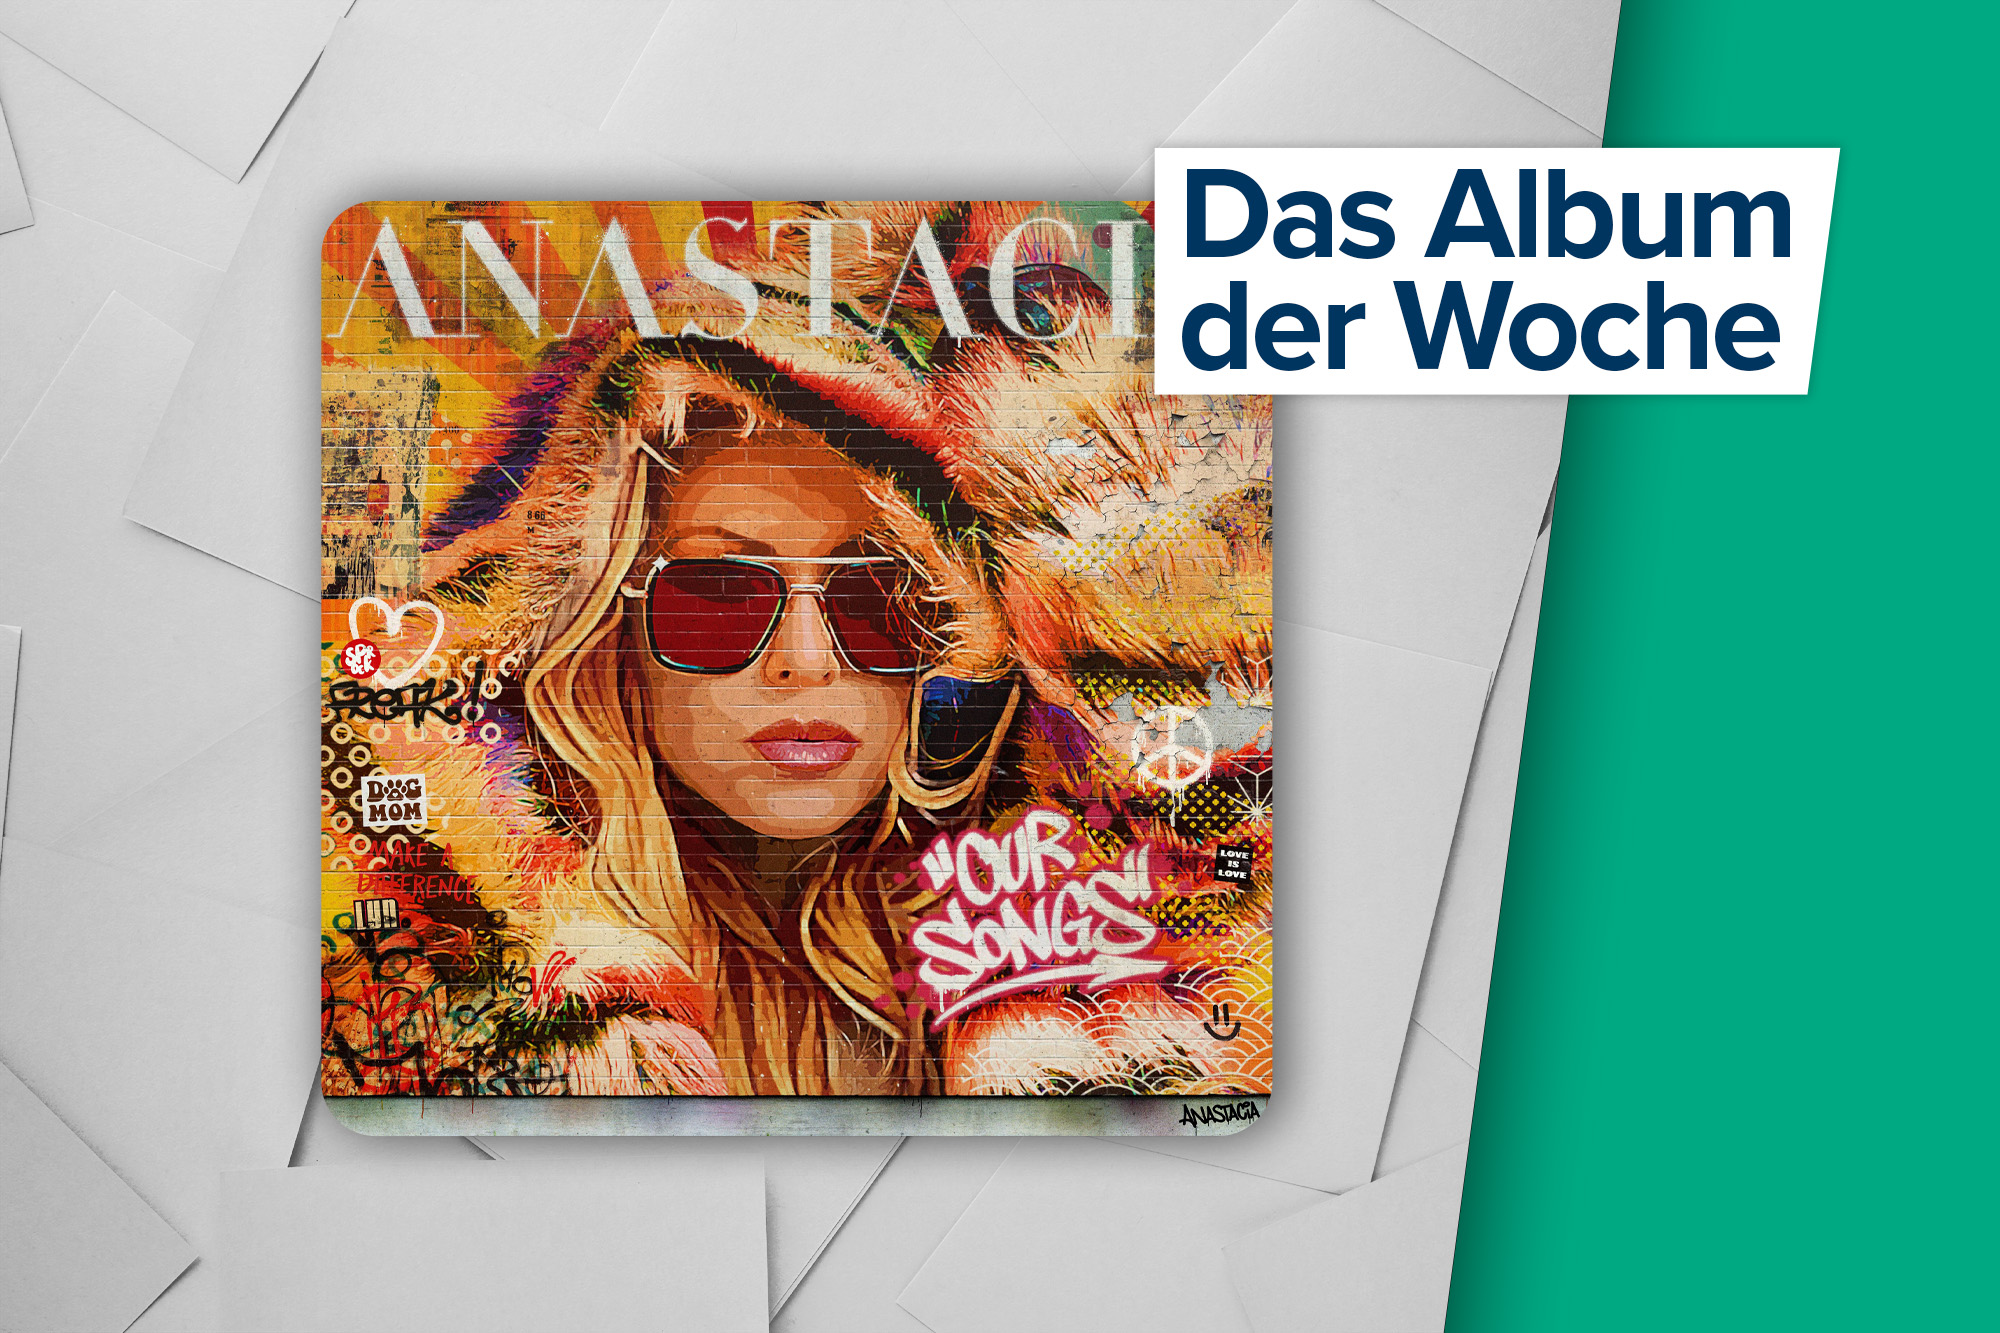 Das Album der Woche: "Our Songs" von Anastacia (Label: Stars By Edel)